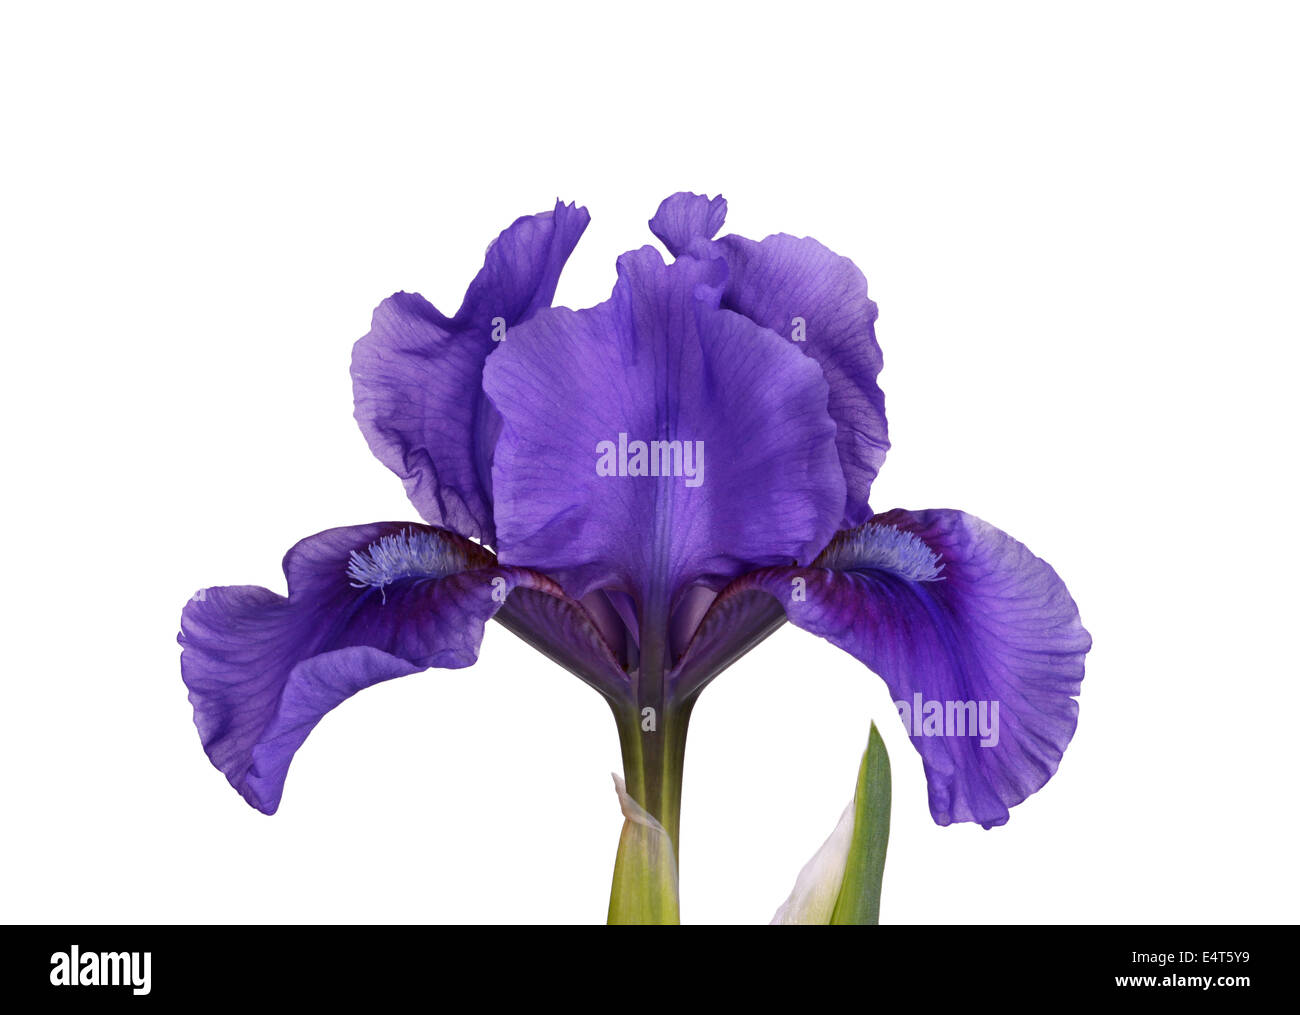 Seule fleur d'un violet foncé, cultivar nain iris isolés contre un fond blanc Banque D'Images